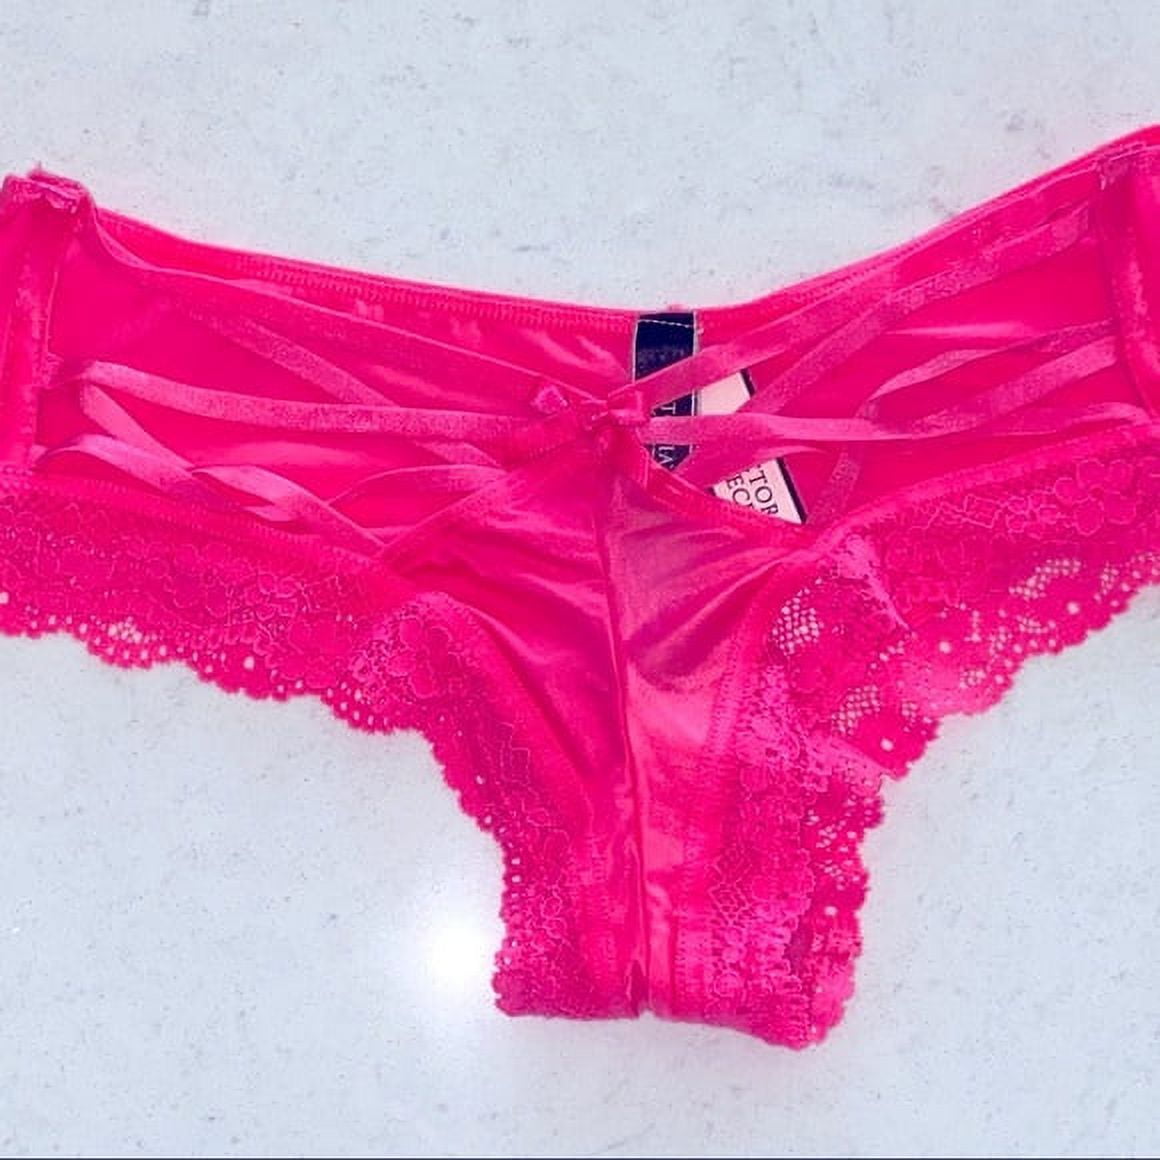 Did You See This? 5/$19.99 Panties - Victorias Secret PINK